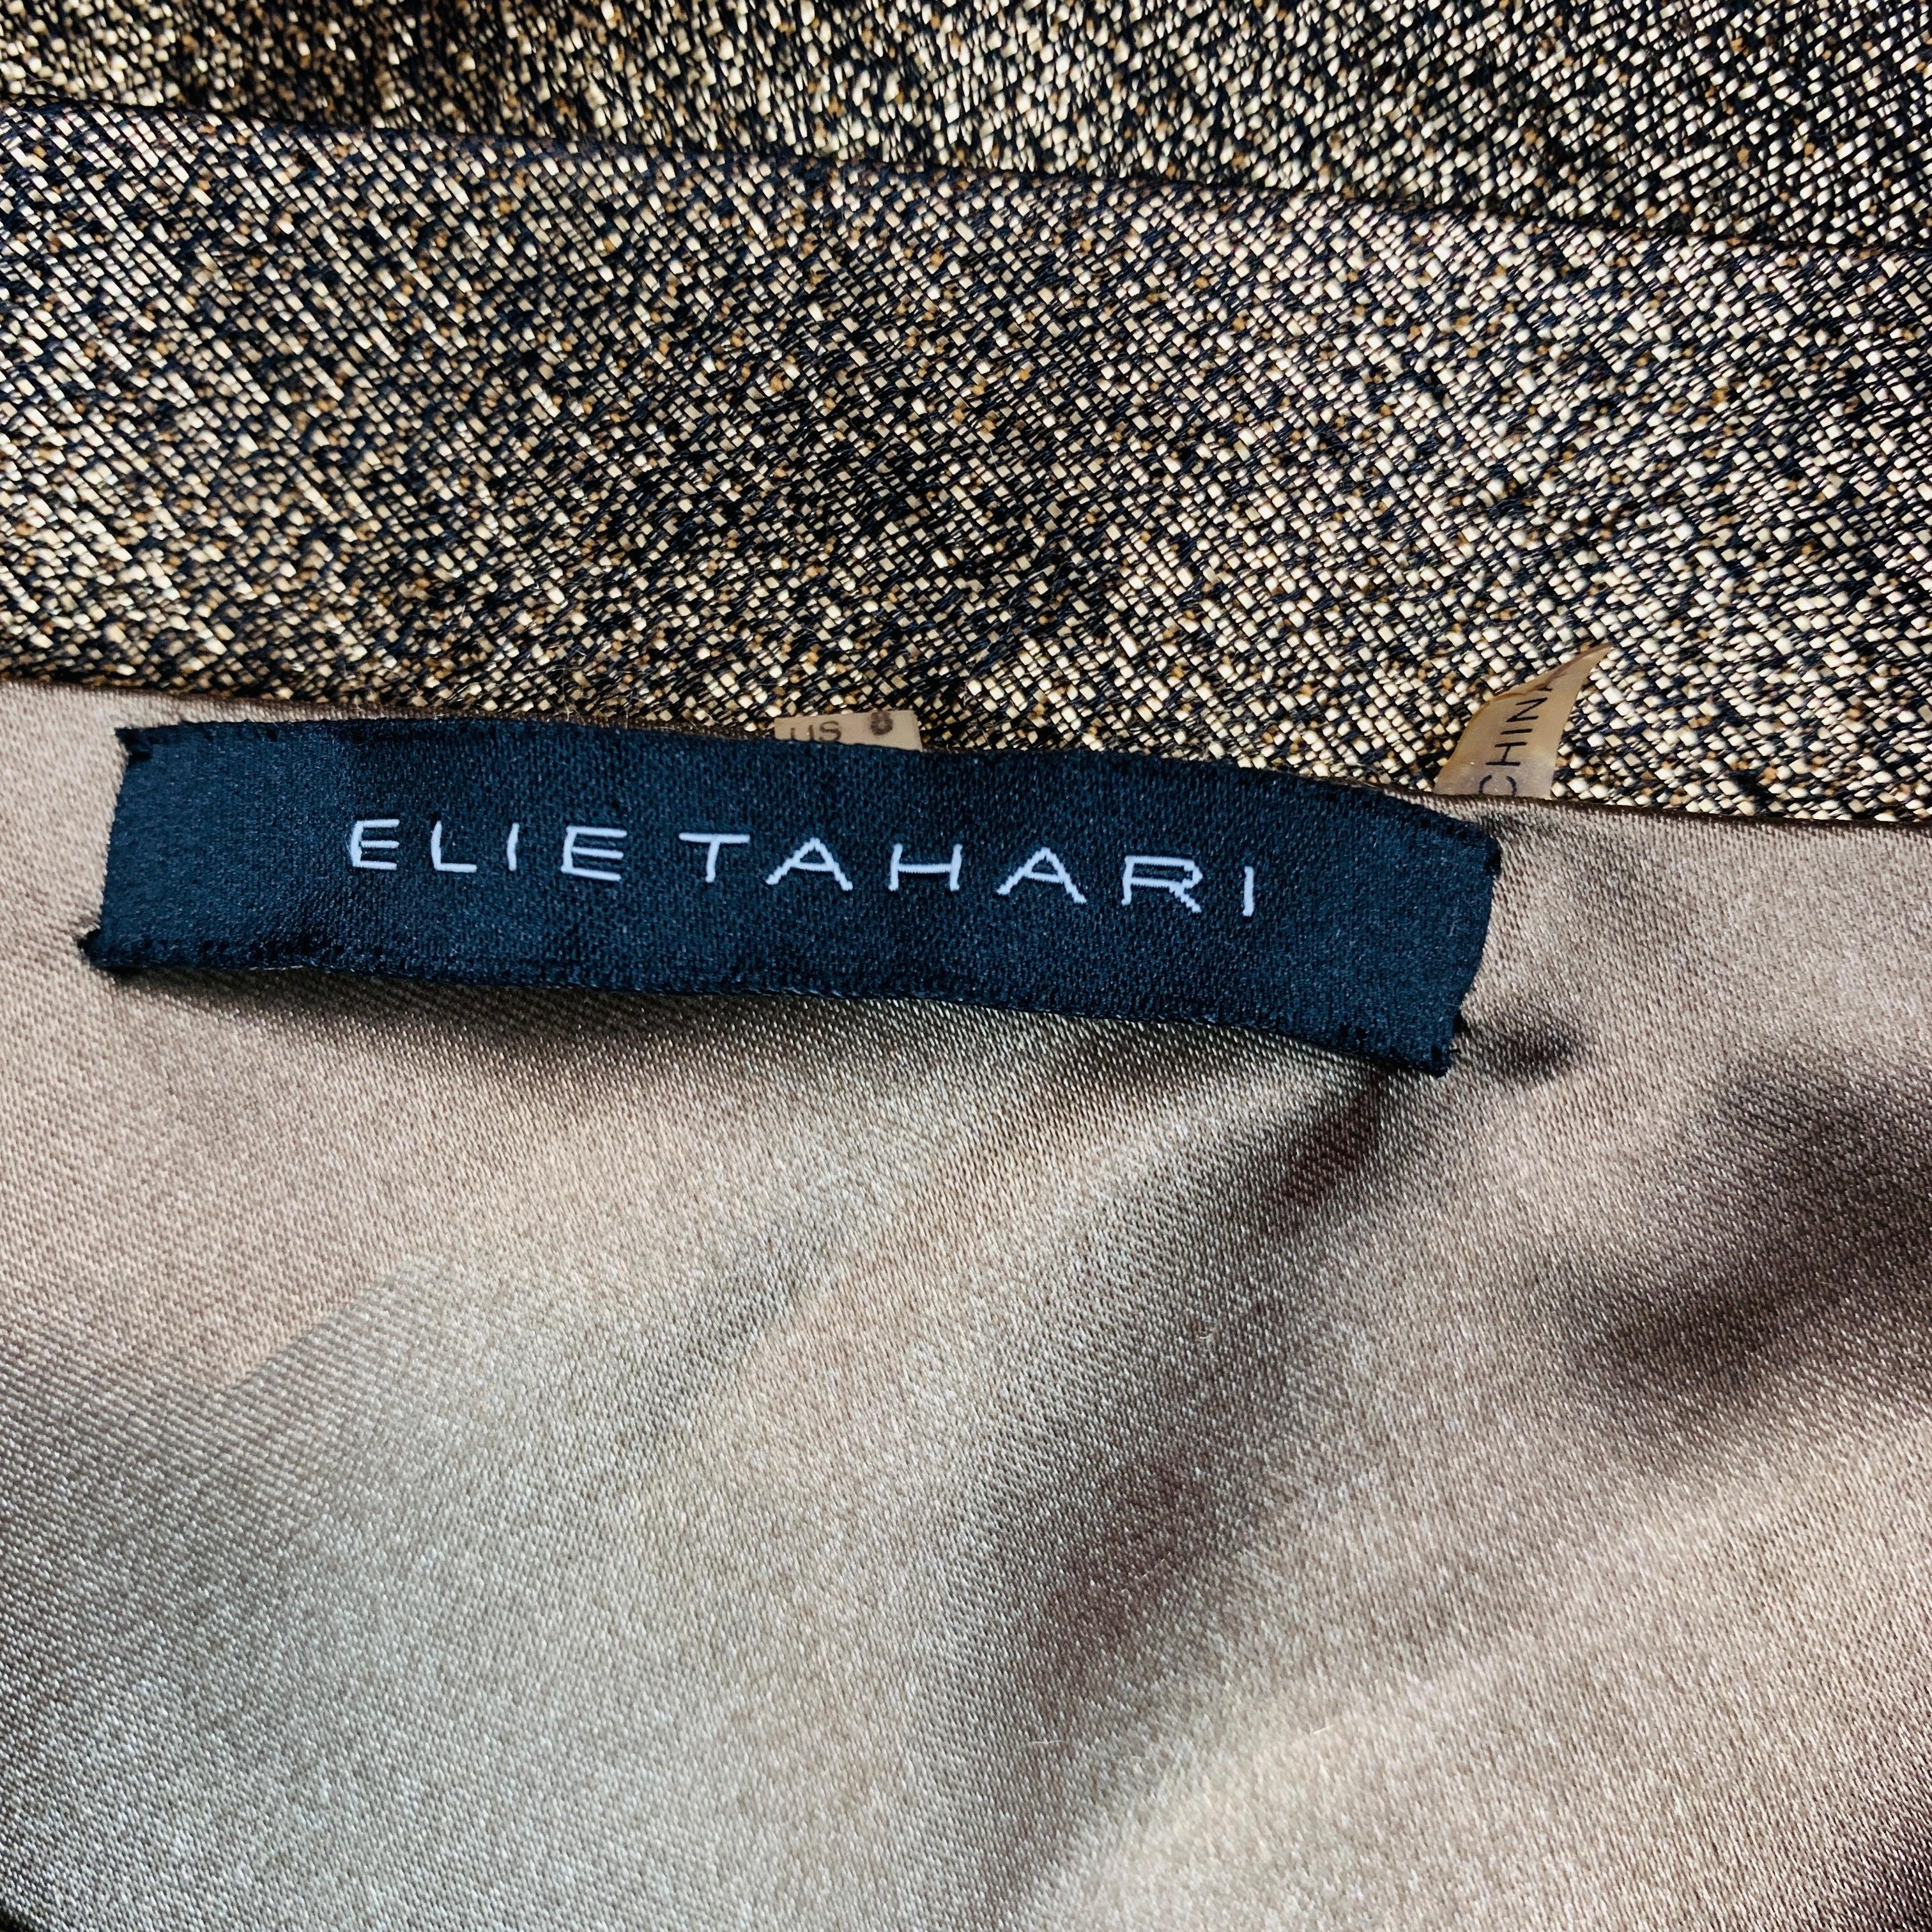 ELIE TAHARI Size 8 Gold Cotton Blend One Shoulder Cocktail Dress For Sale 3